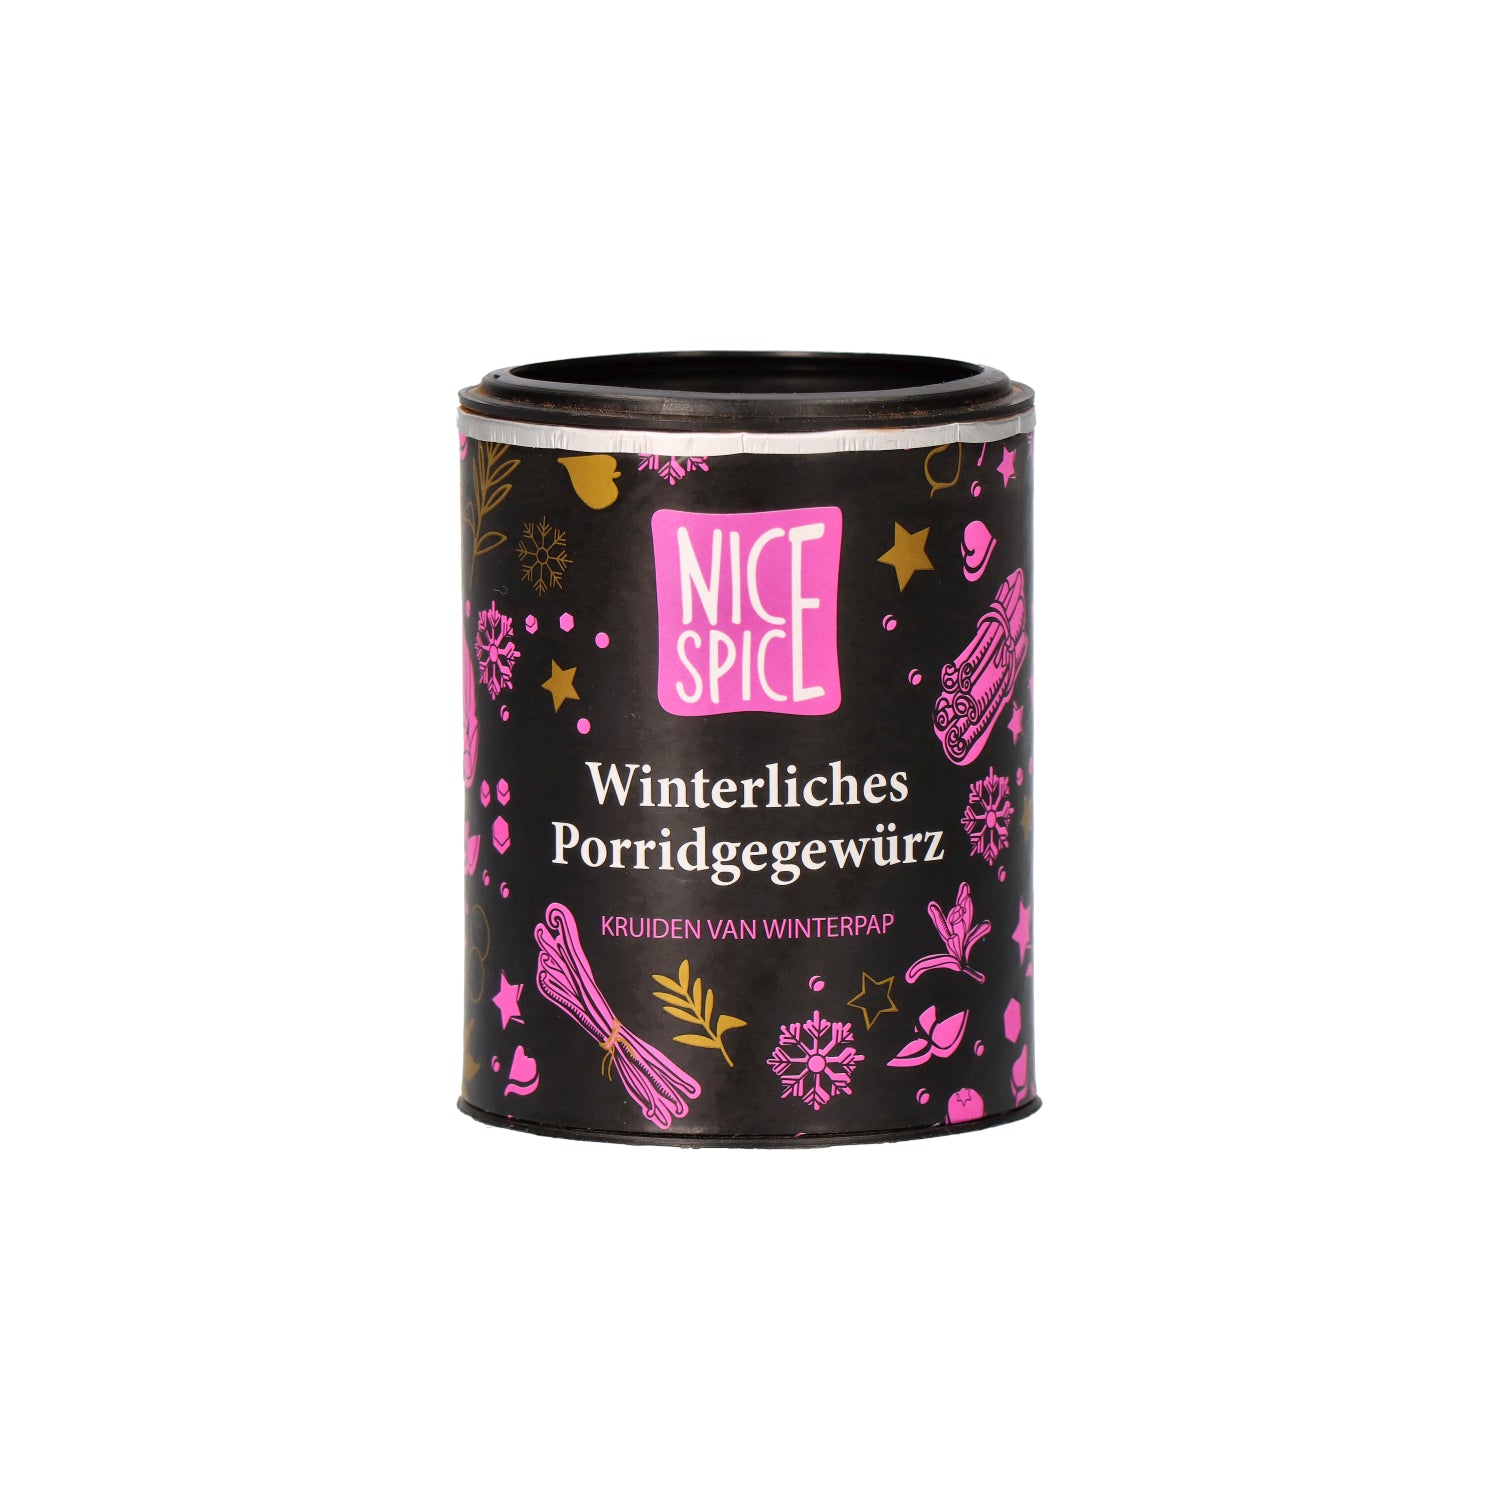 NICE SPICE Winterliches Porridgegewürz in schwarz pinker zylinderförmiger Dose mit verspieltem Design vor weißem Hintergrund